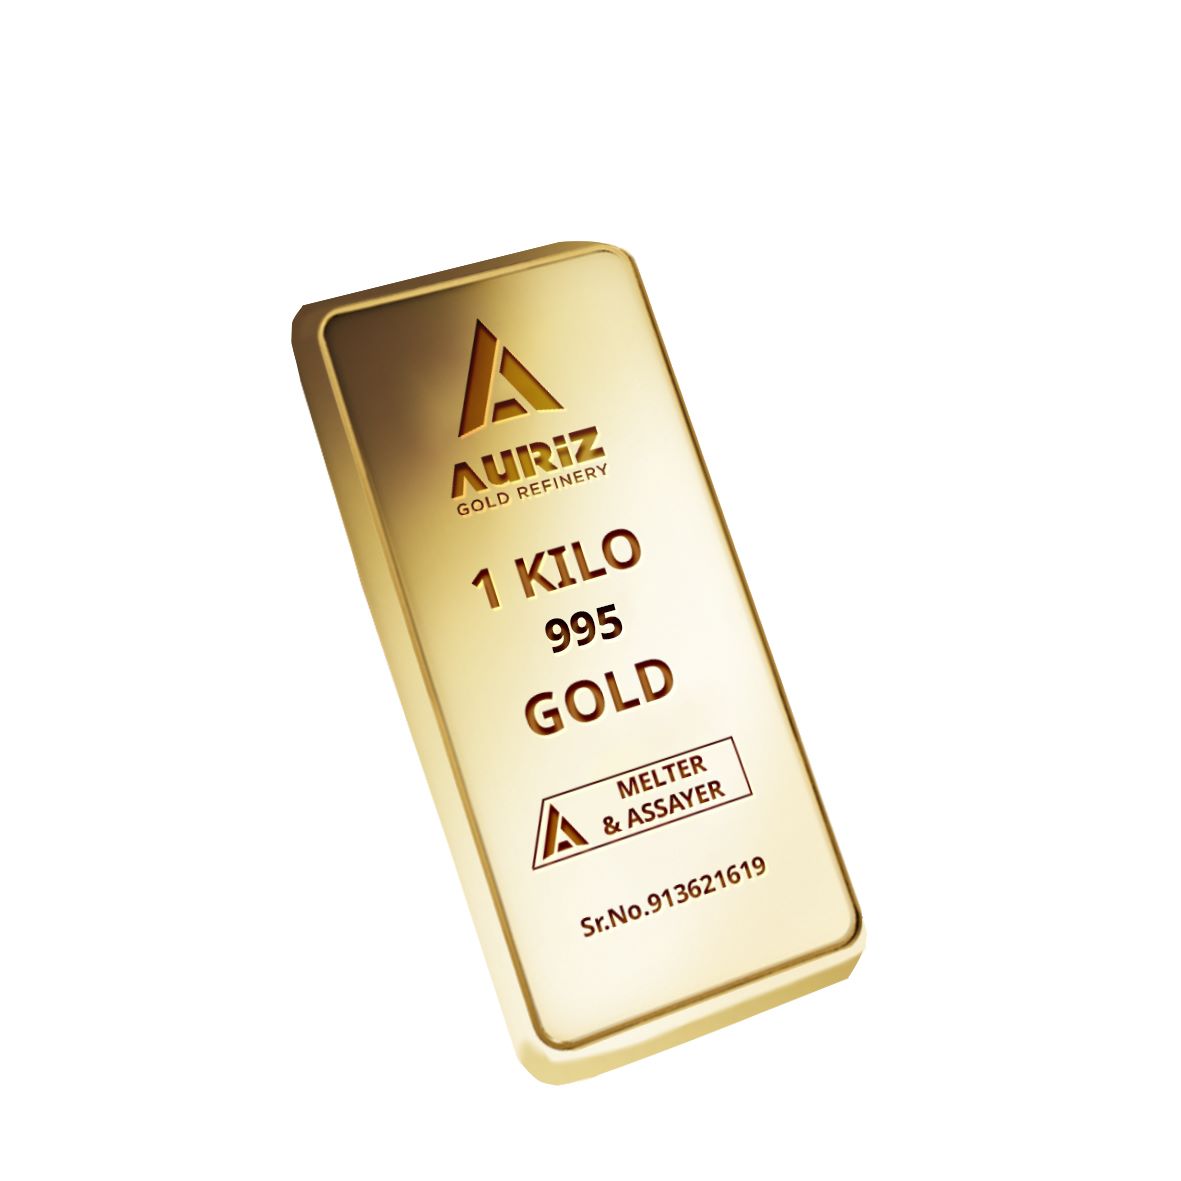 1 KG Gold Bar 995